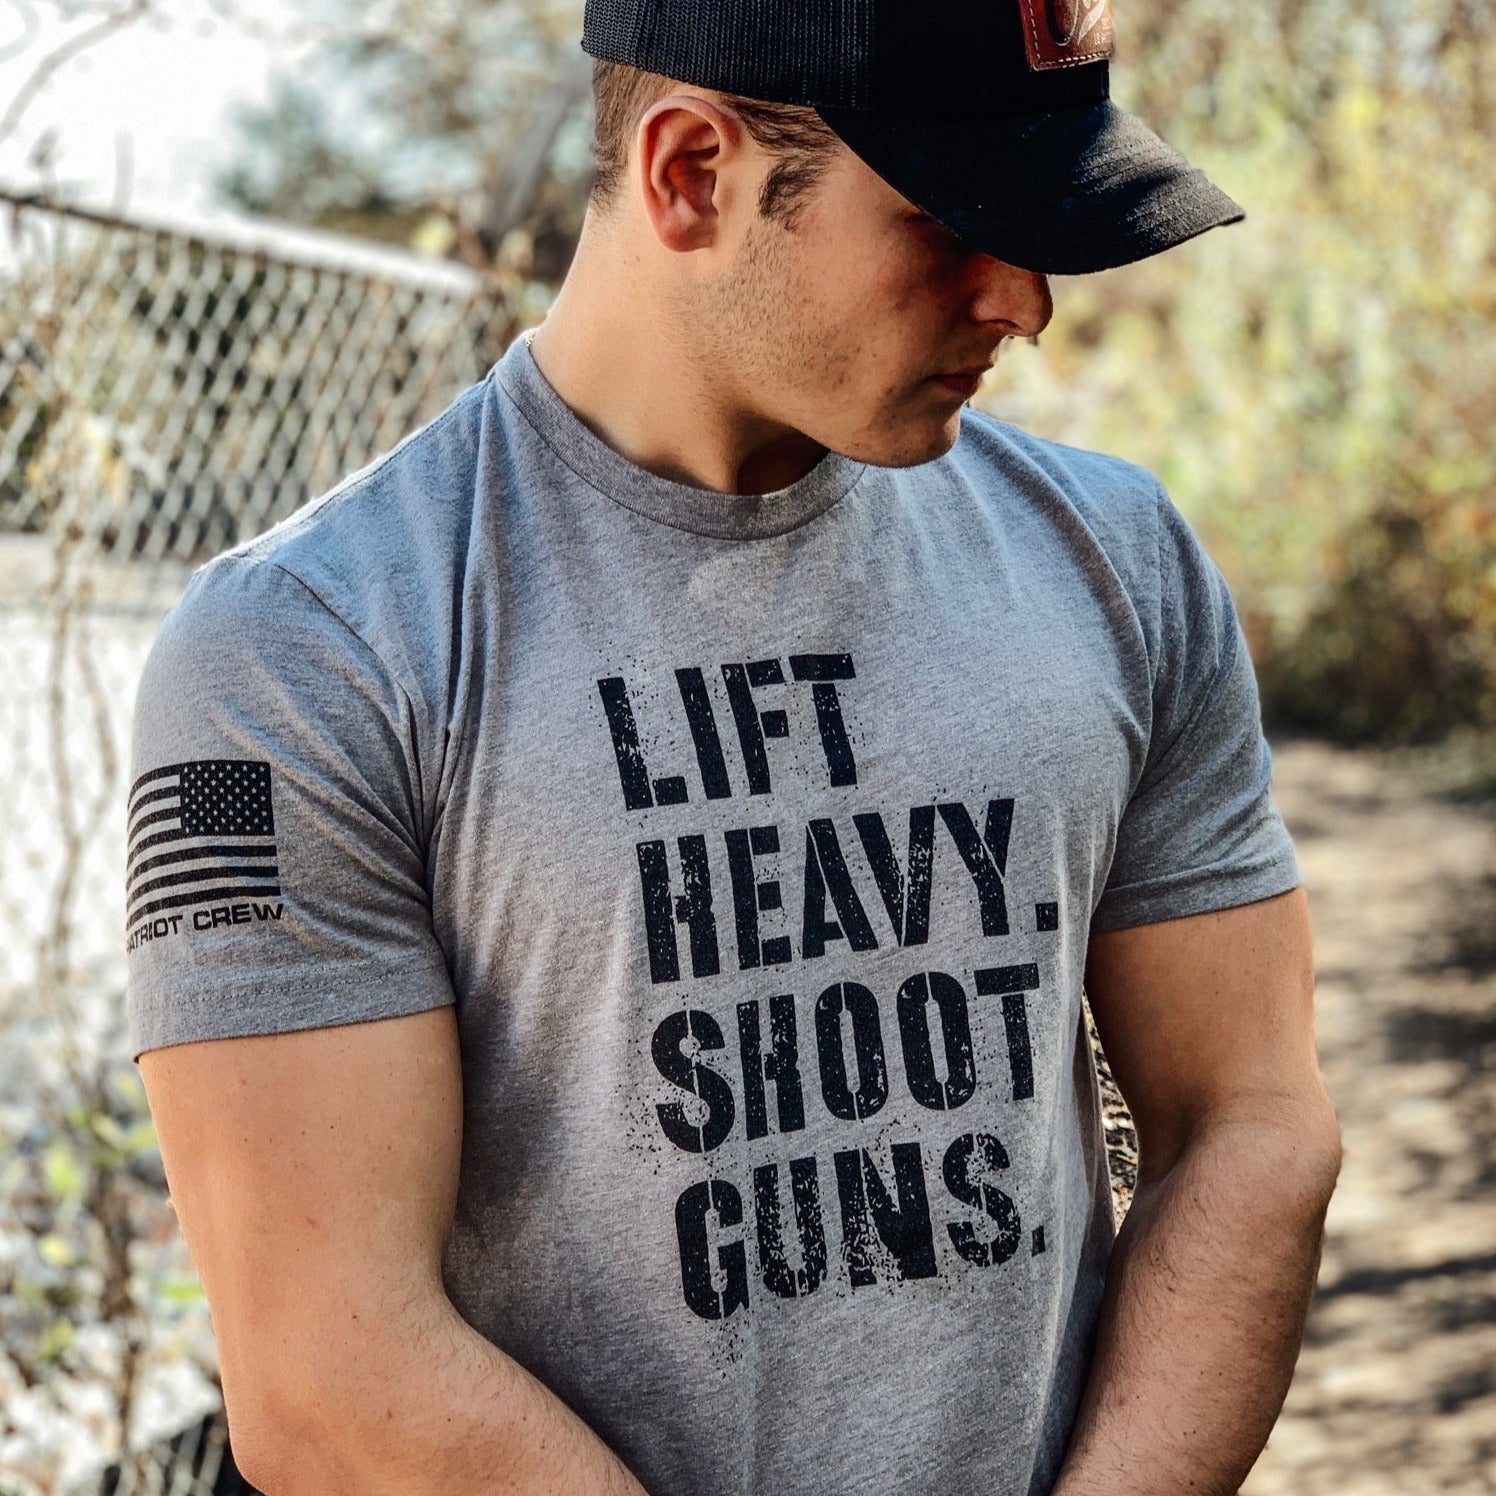 Lift Heavy. Shoot Guns. T-Shirt